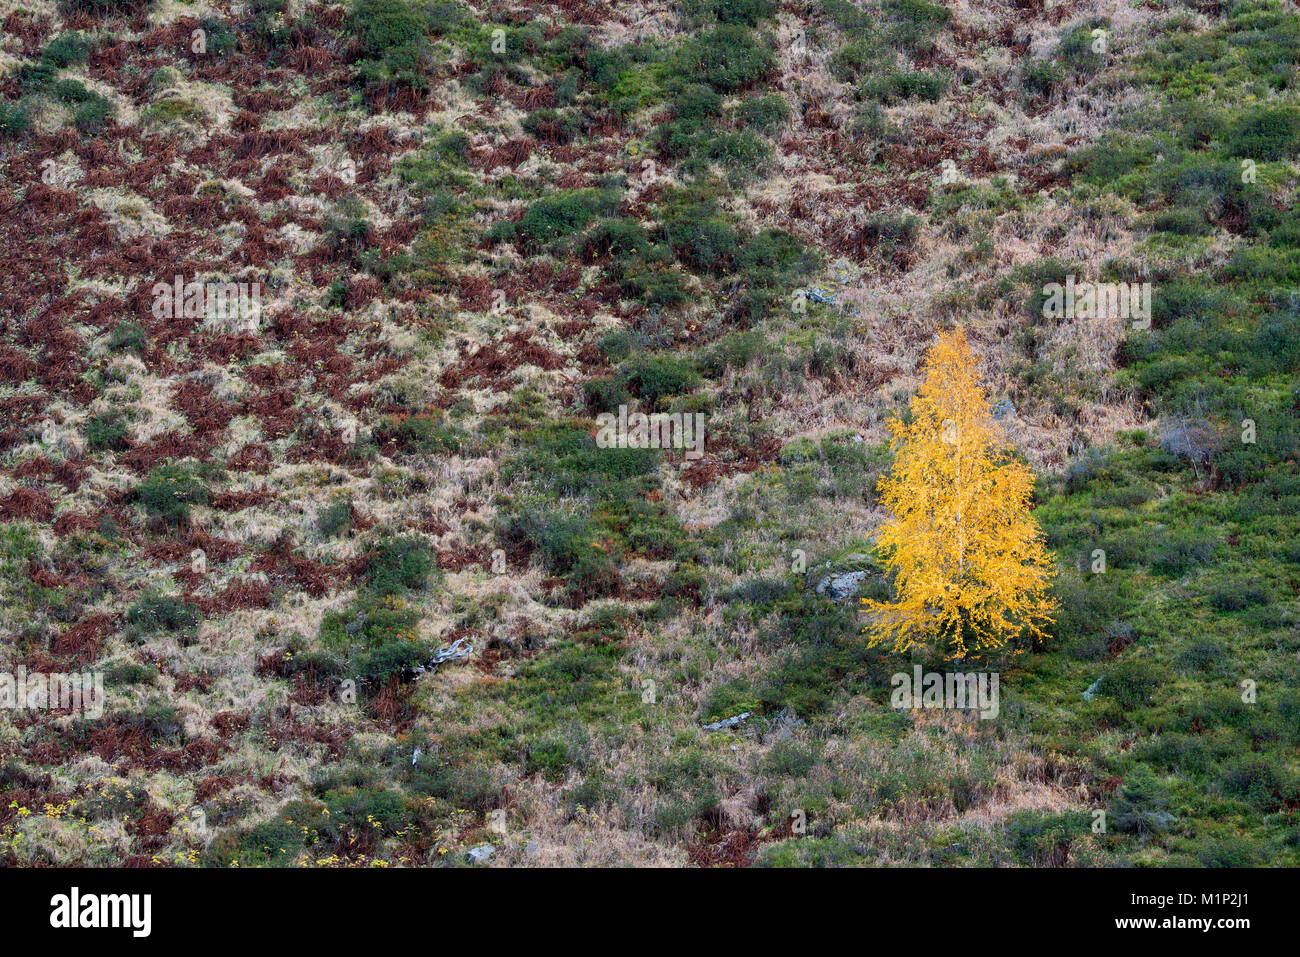 Le bouleau verruqueux (Betula pendula) dans Rosannaschlucht,Couleurs de l'automne,St. Anton am Arlberg, Tyrol, Autriche Banque D'Images